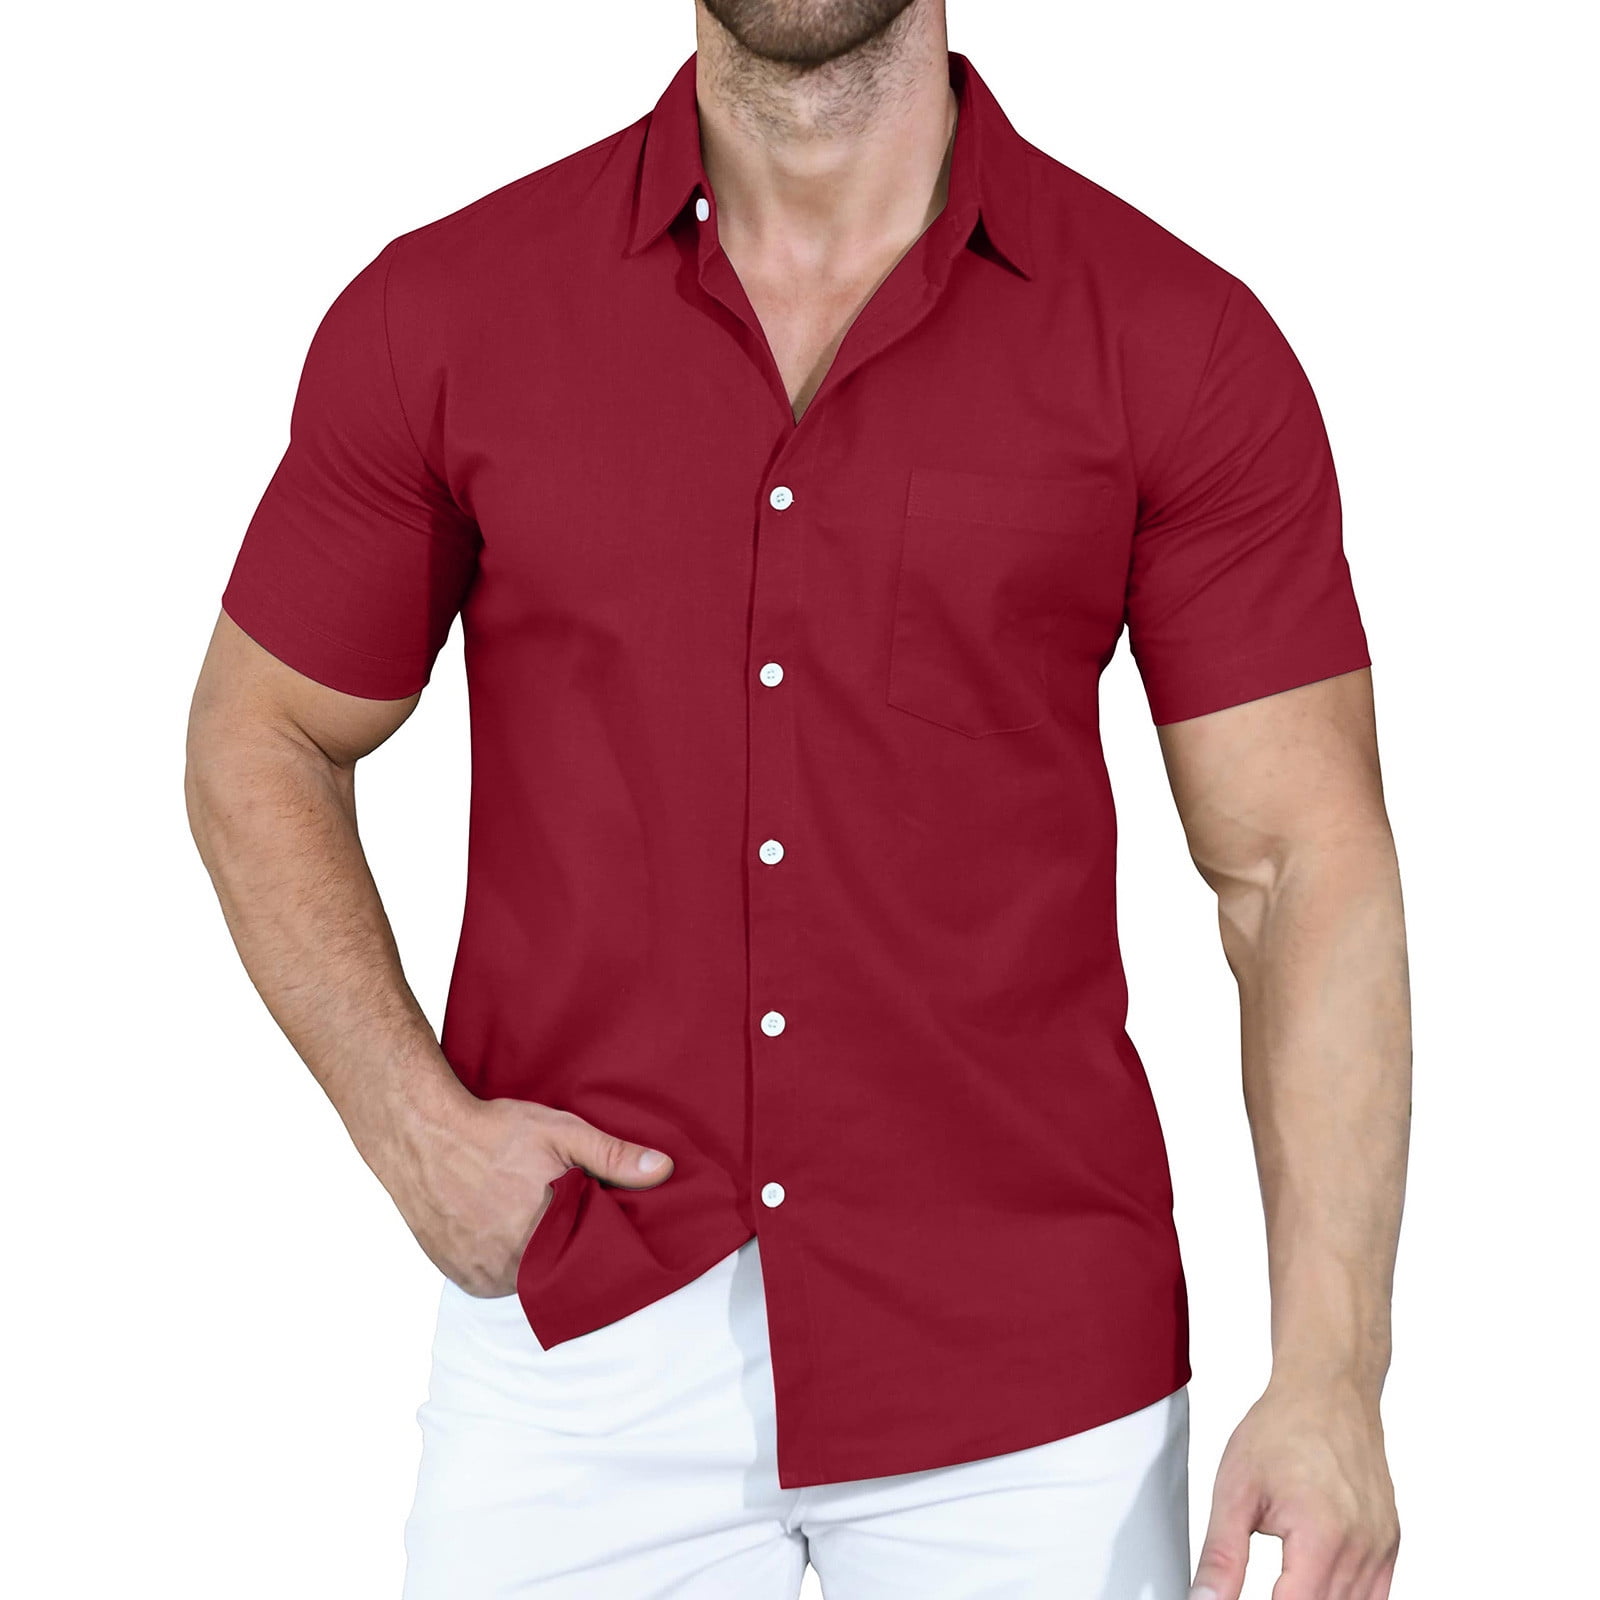 RYRJJ Men's Short Sleeve Button Up Linen Shirts Summer Casual Pocket Beach  Dress Shirts(Brown,XL) 